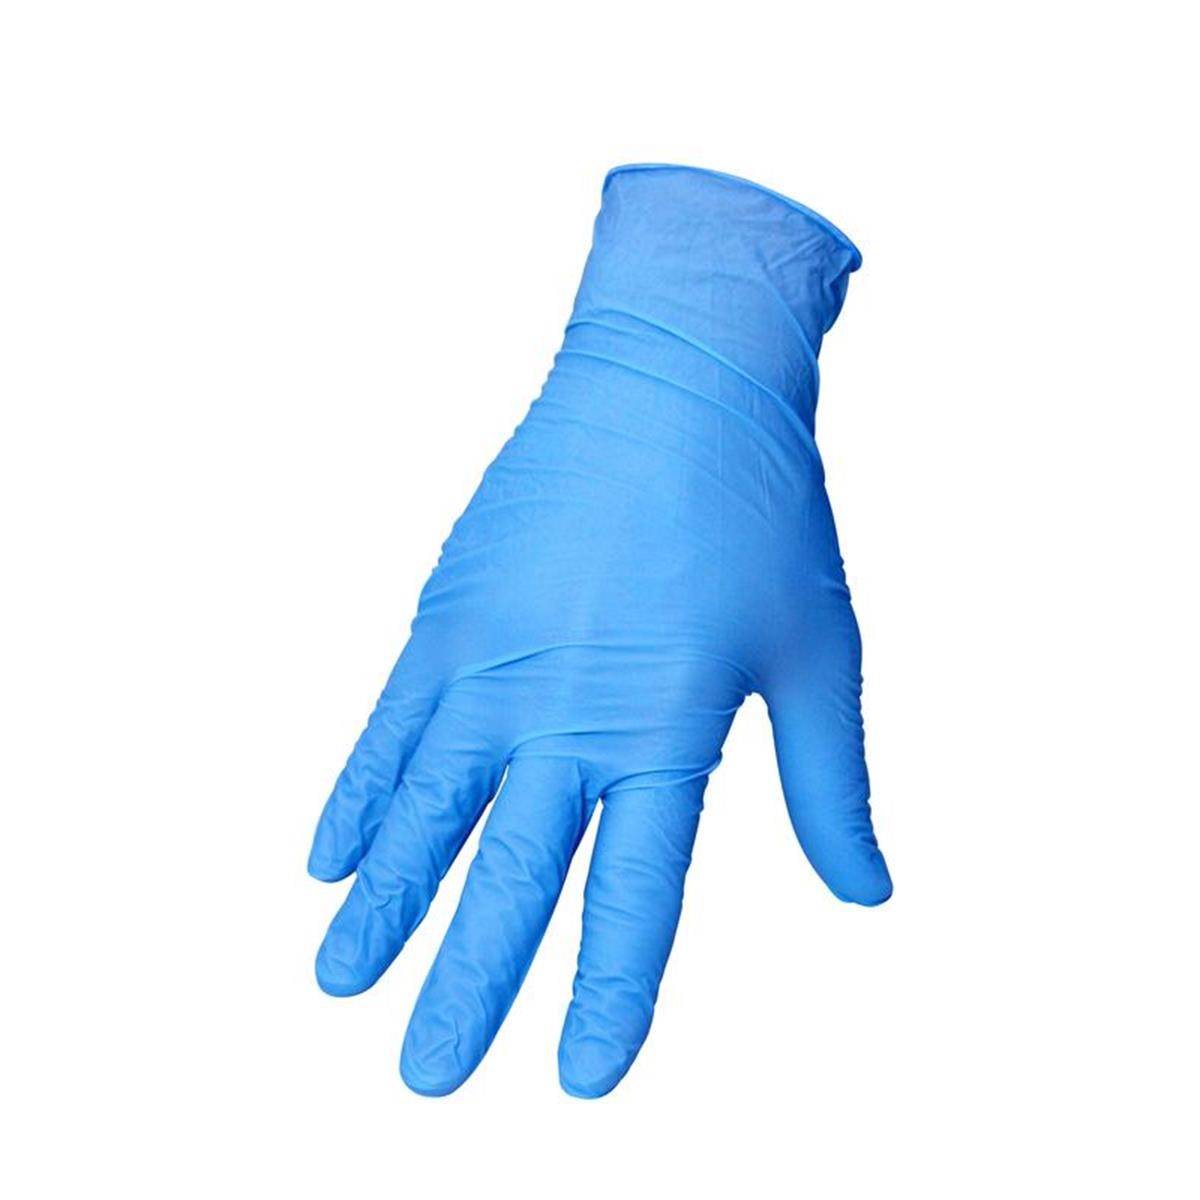 Motion Pro Nitril-Handschuhe  Blau, 100er Pack, 0.5 mm